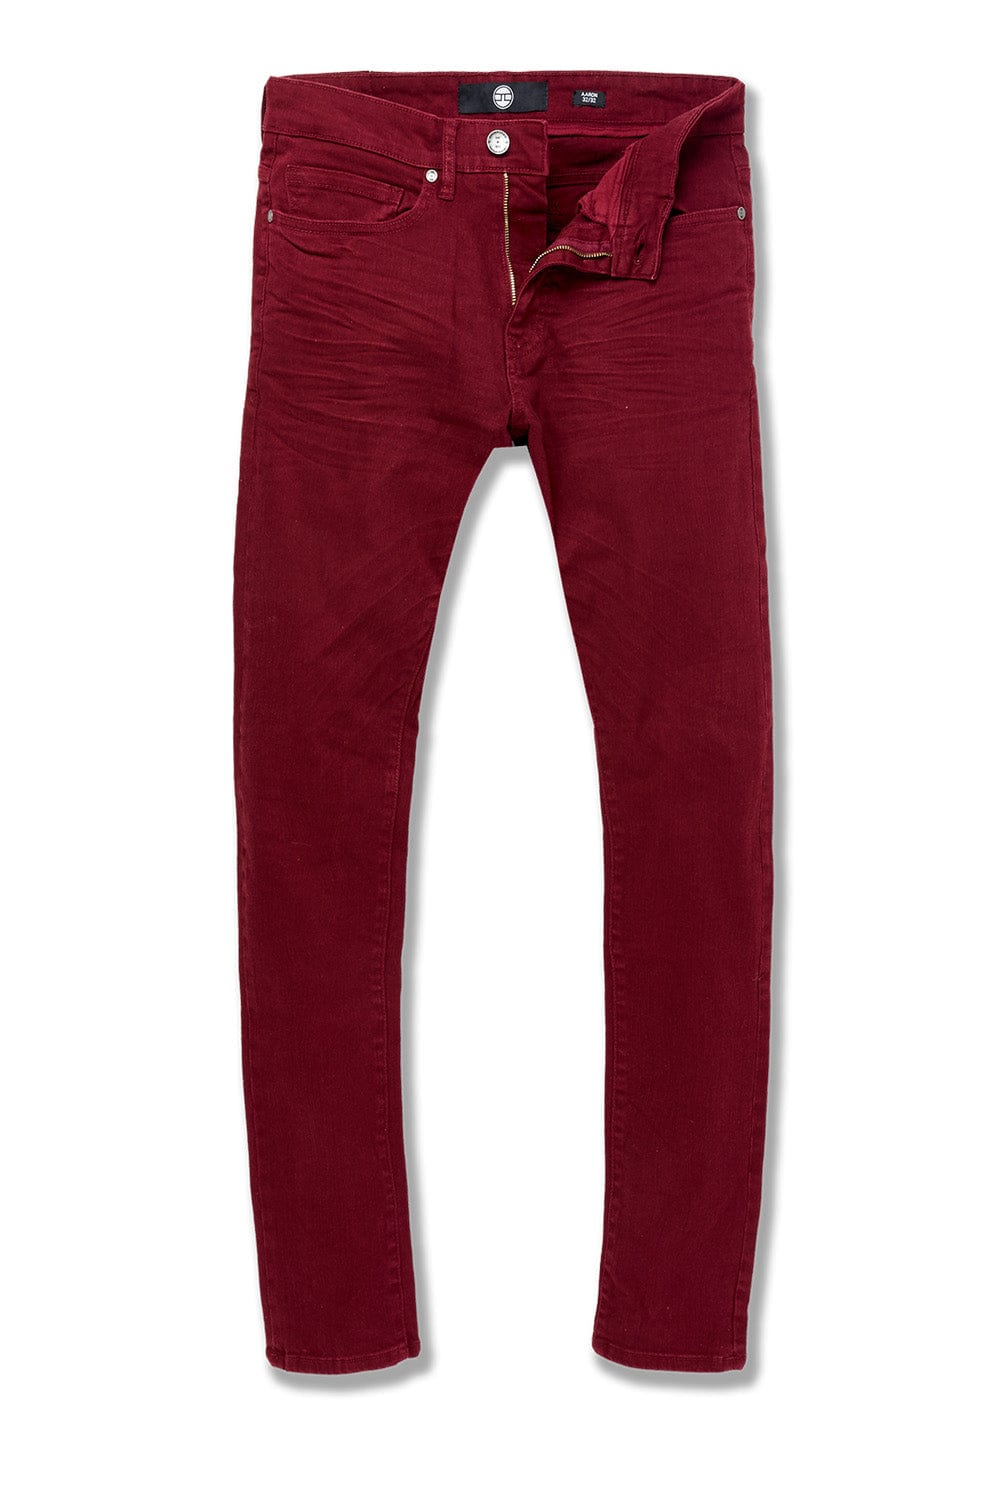 Jordan Craig Ross - Pure Tribeca Twill Pants (Exclusive Colors) Bordeaux / 28/32